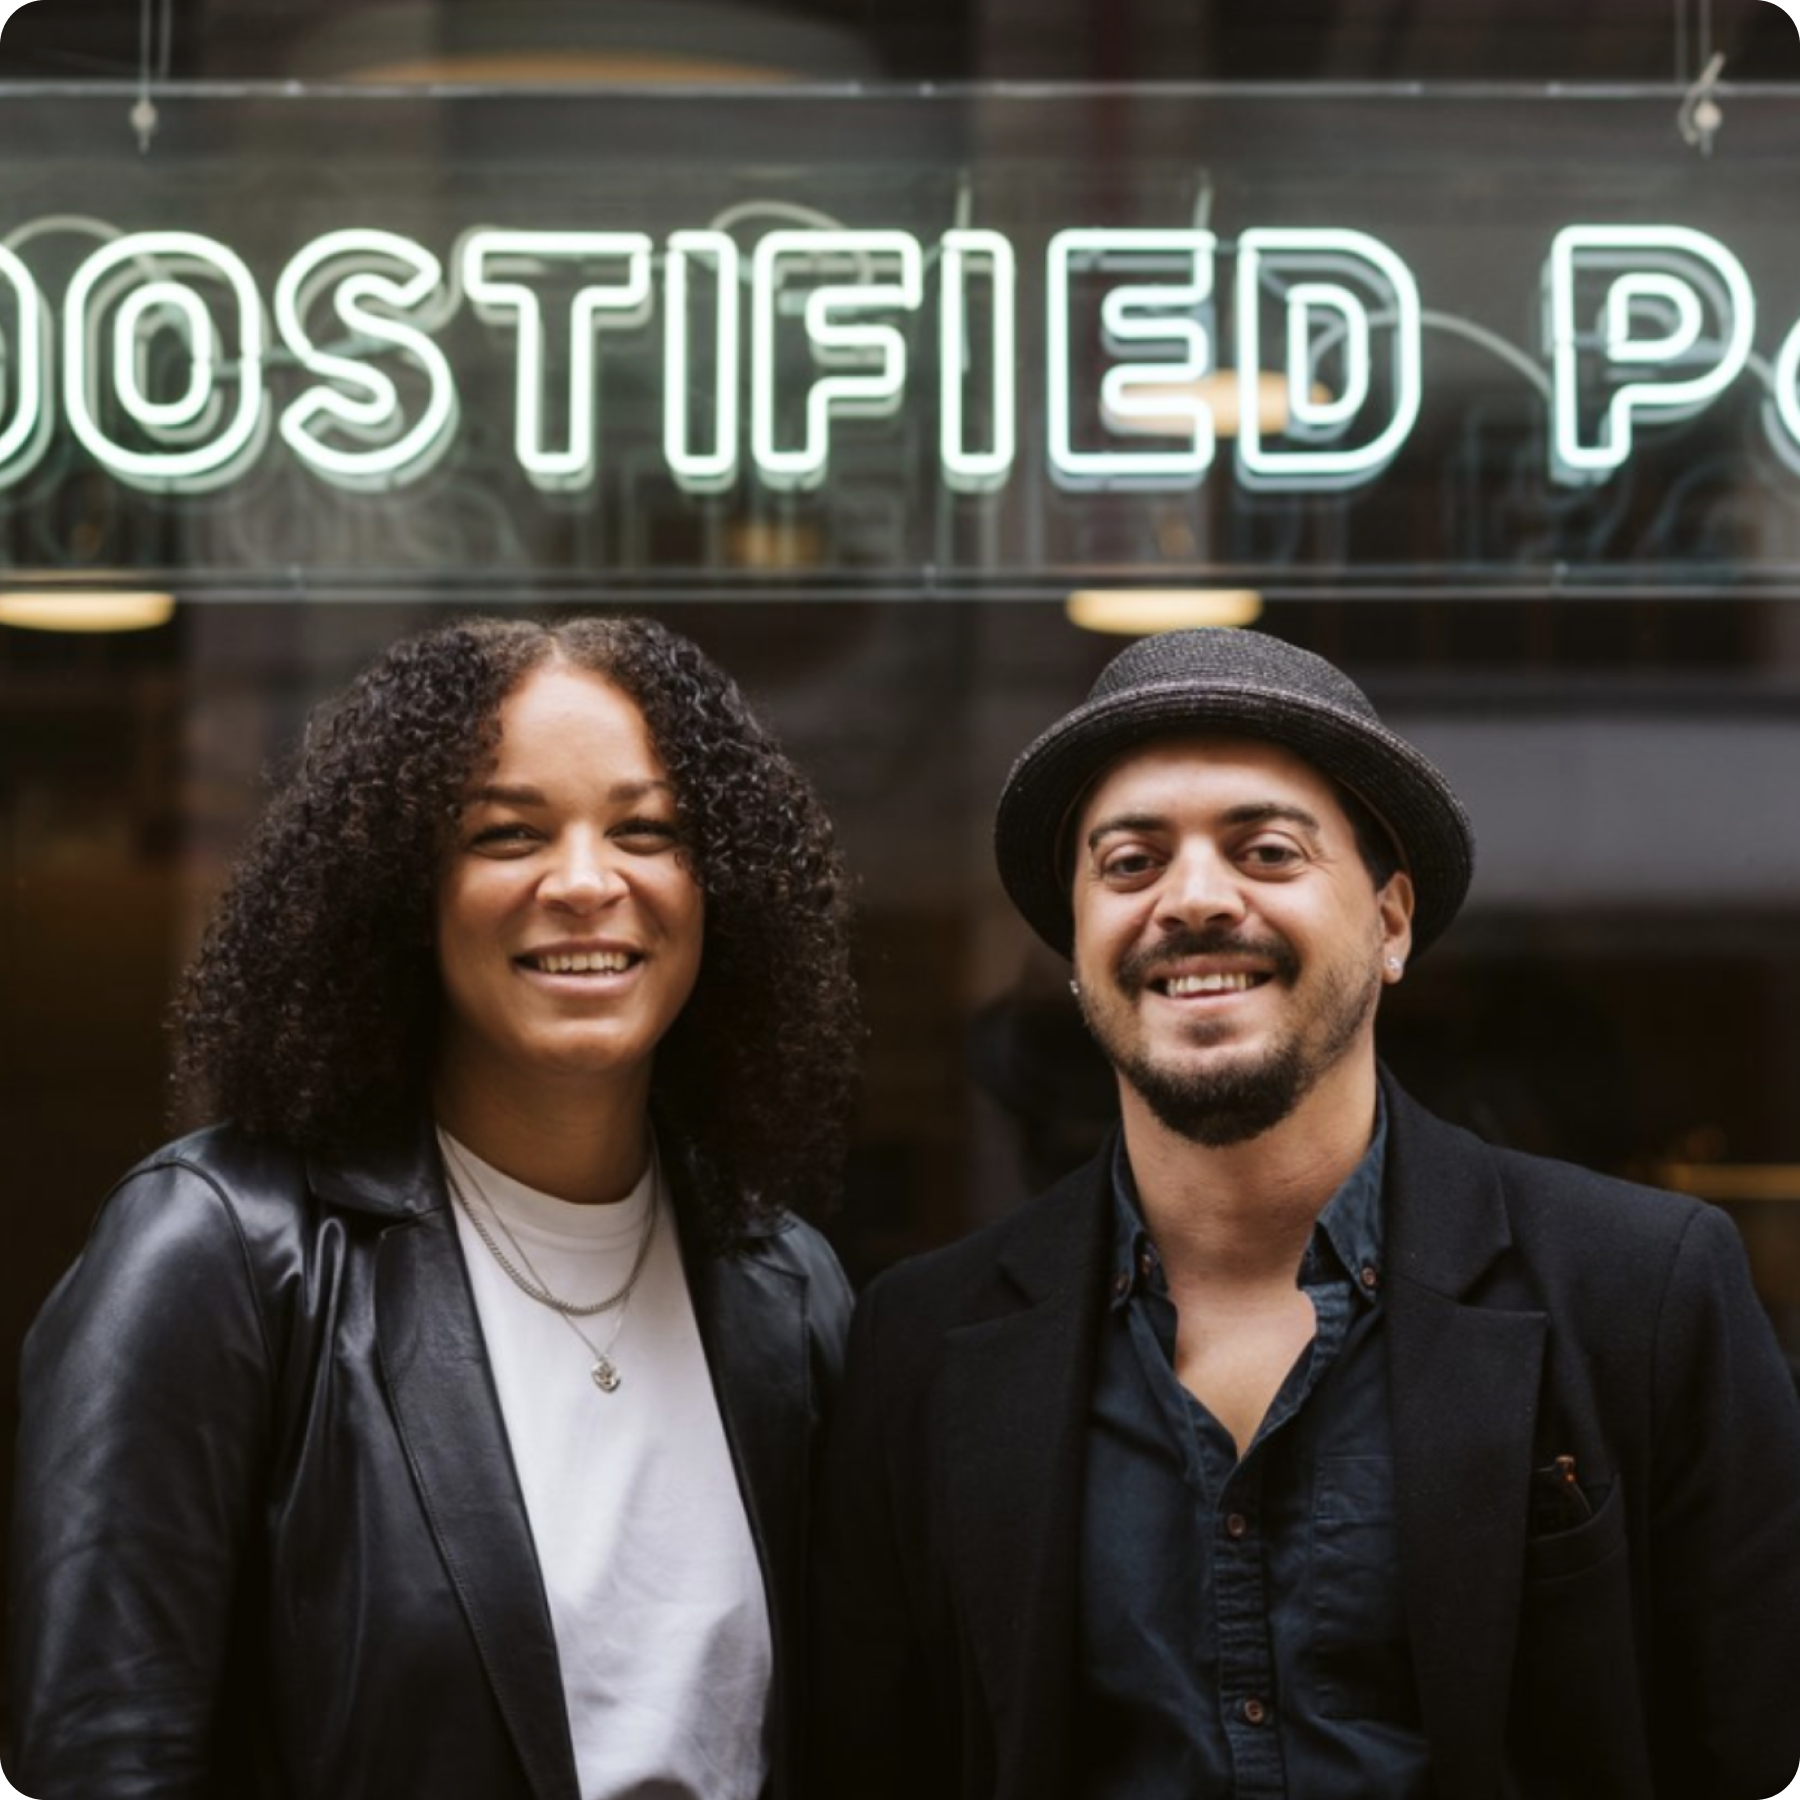 Boostified Pay lanserar marknadens första Collaboration Page för samarbeten